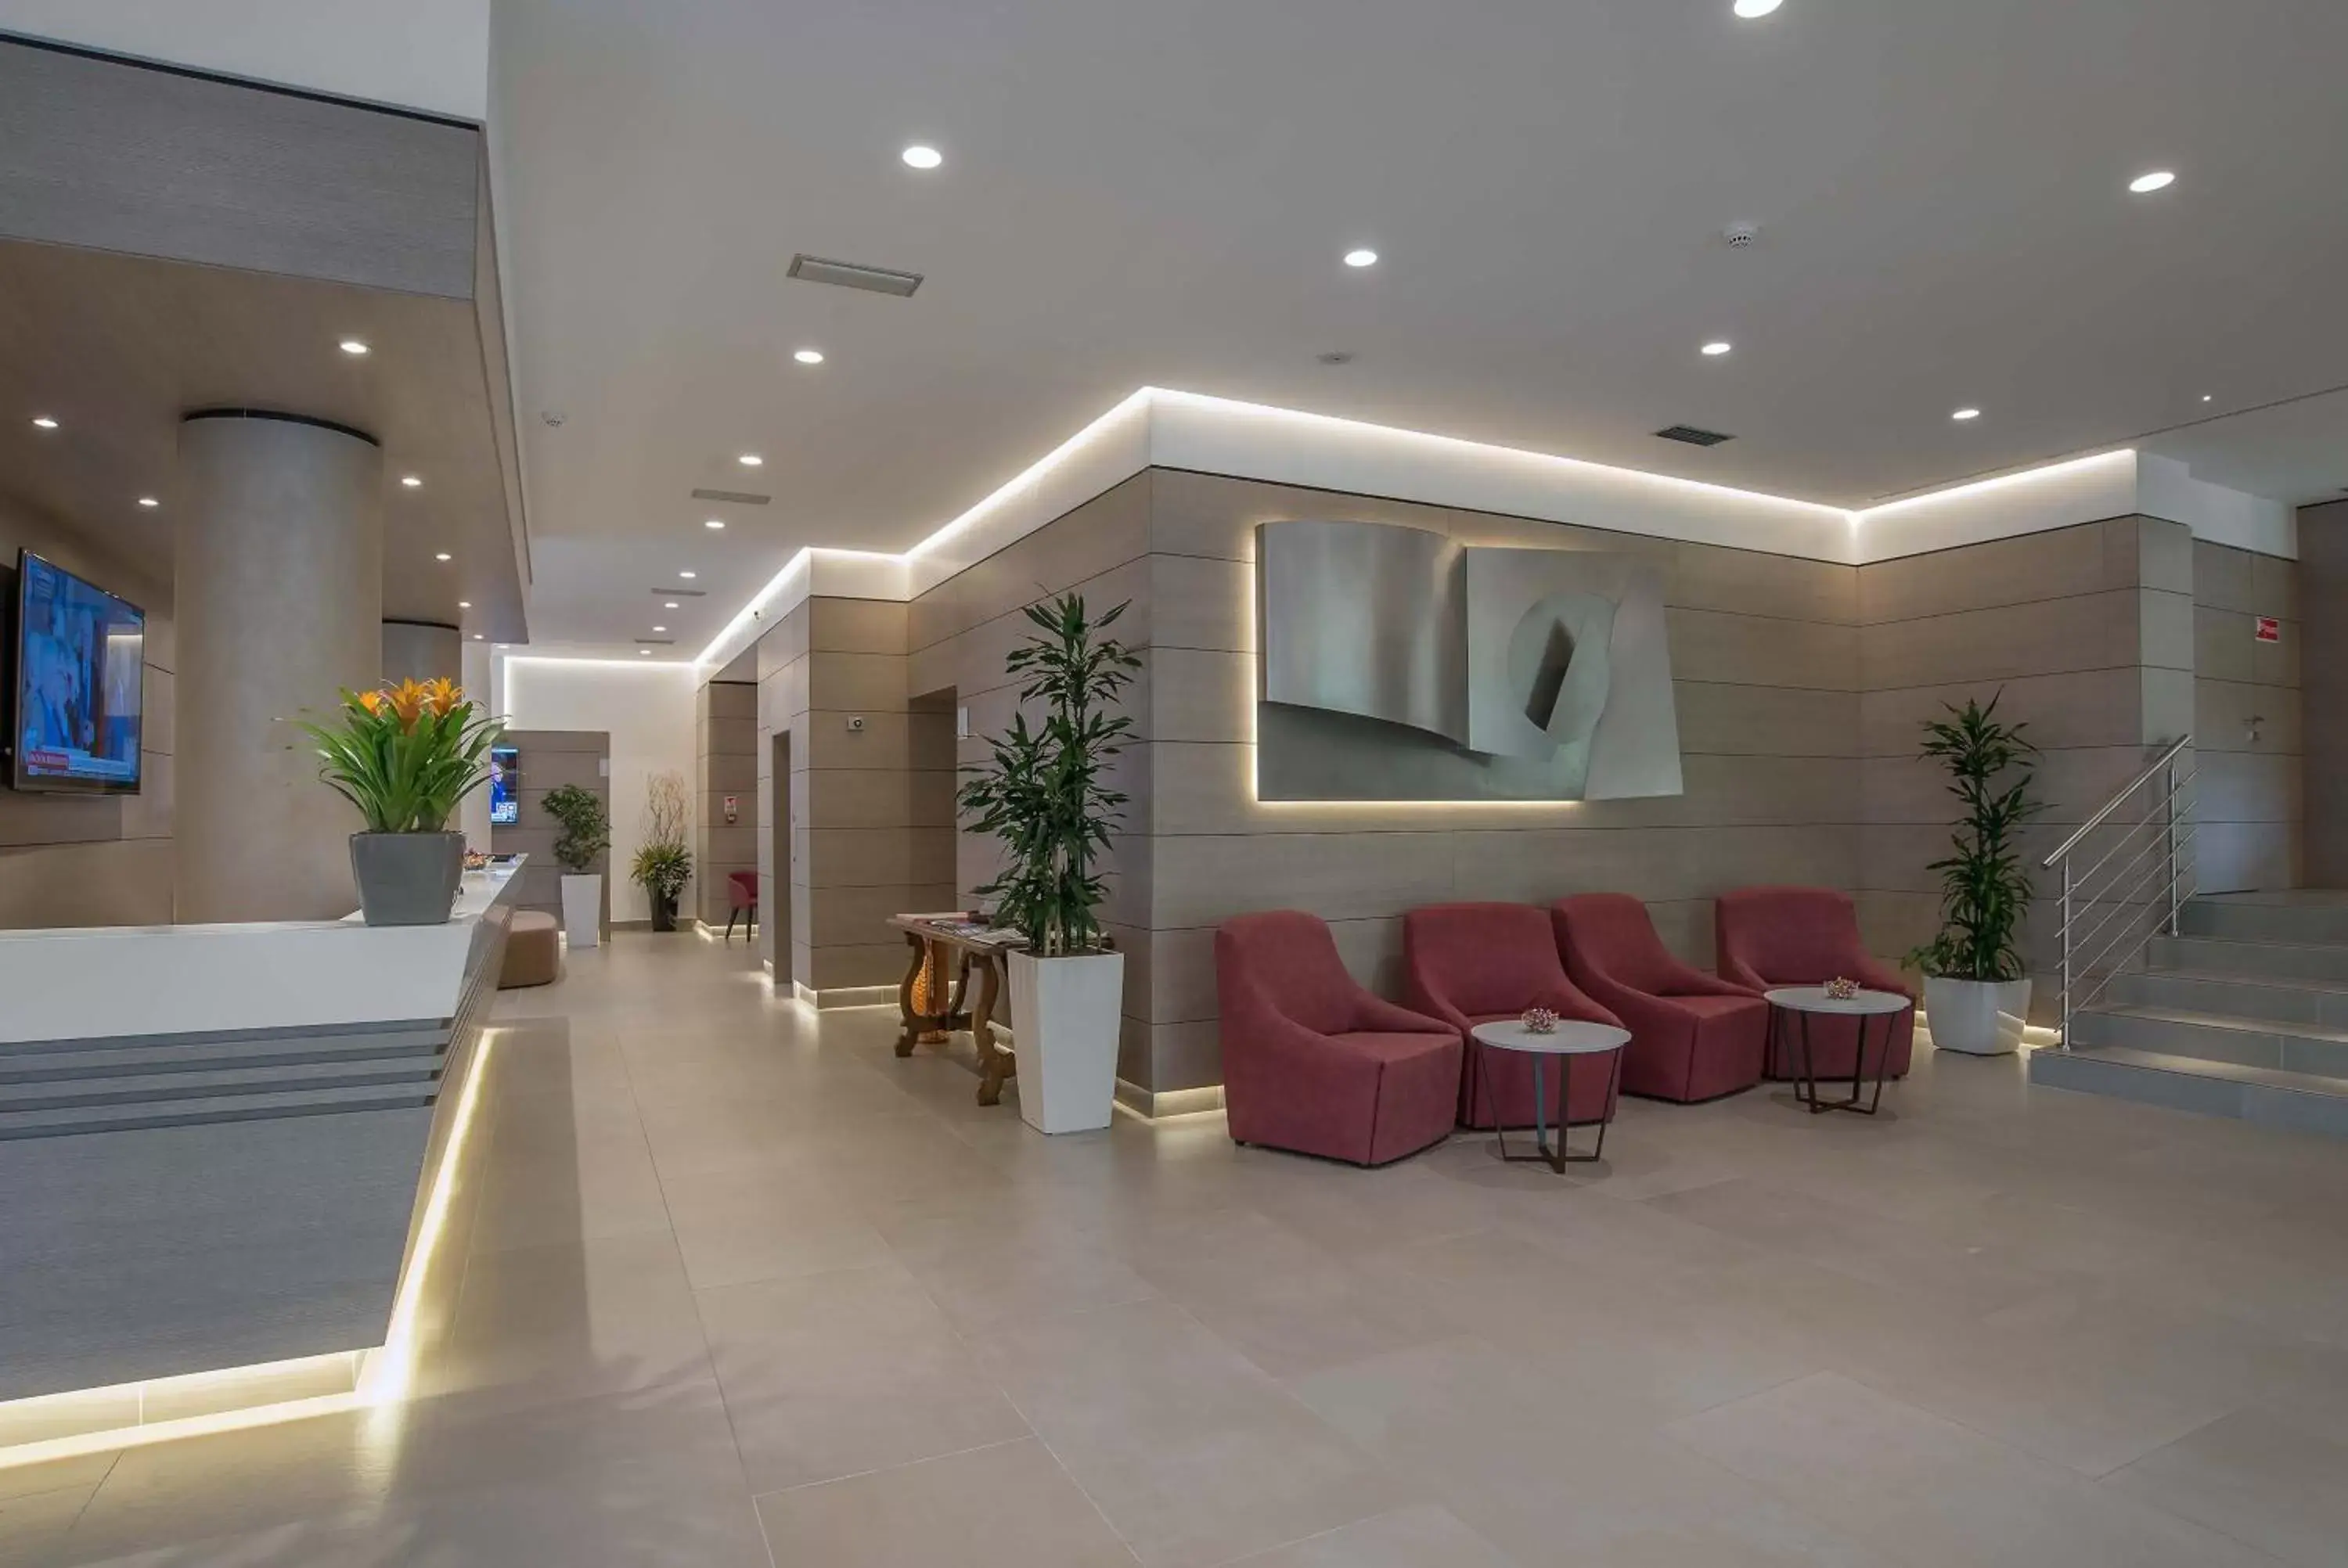 Lobby or reception in Hotel La Giocca